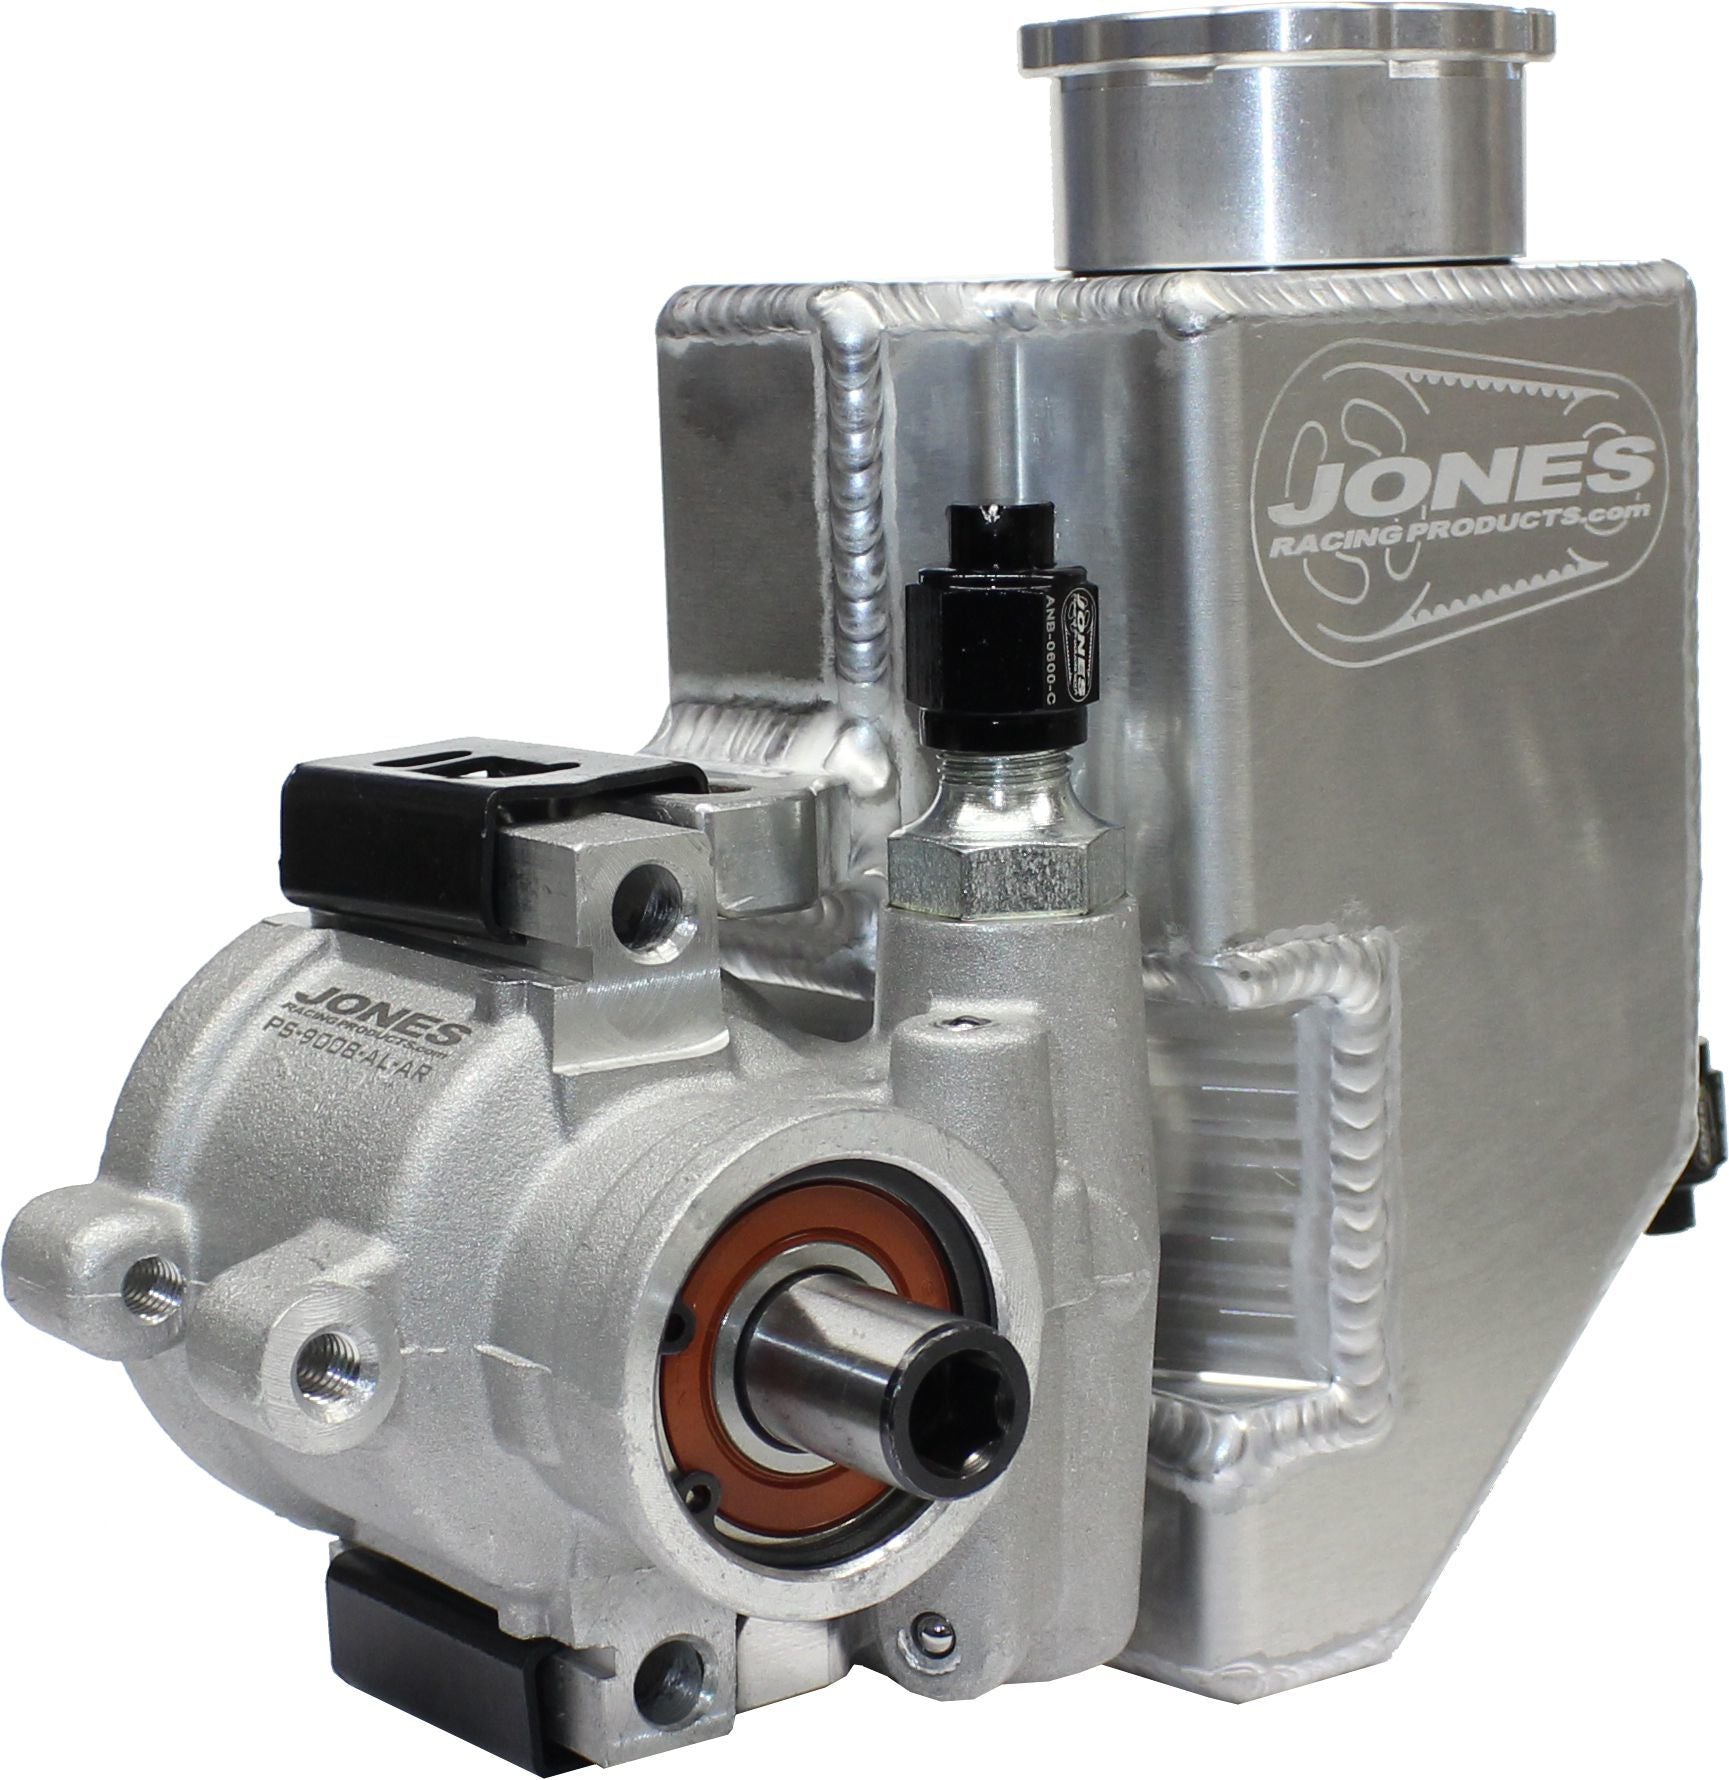 Jones Racing Products Alum Mini P/S Pump with Alum Reservoir JRPPS-9008-AL-AR